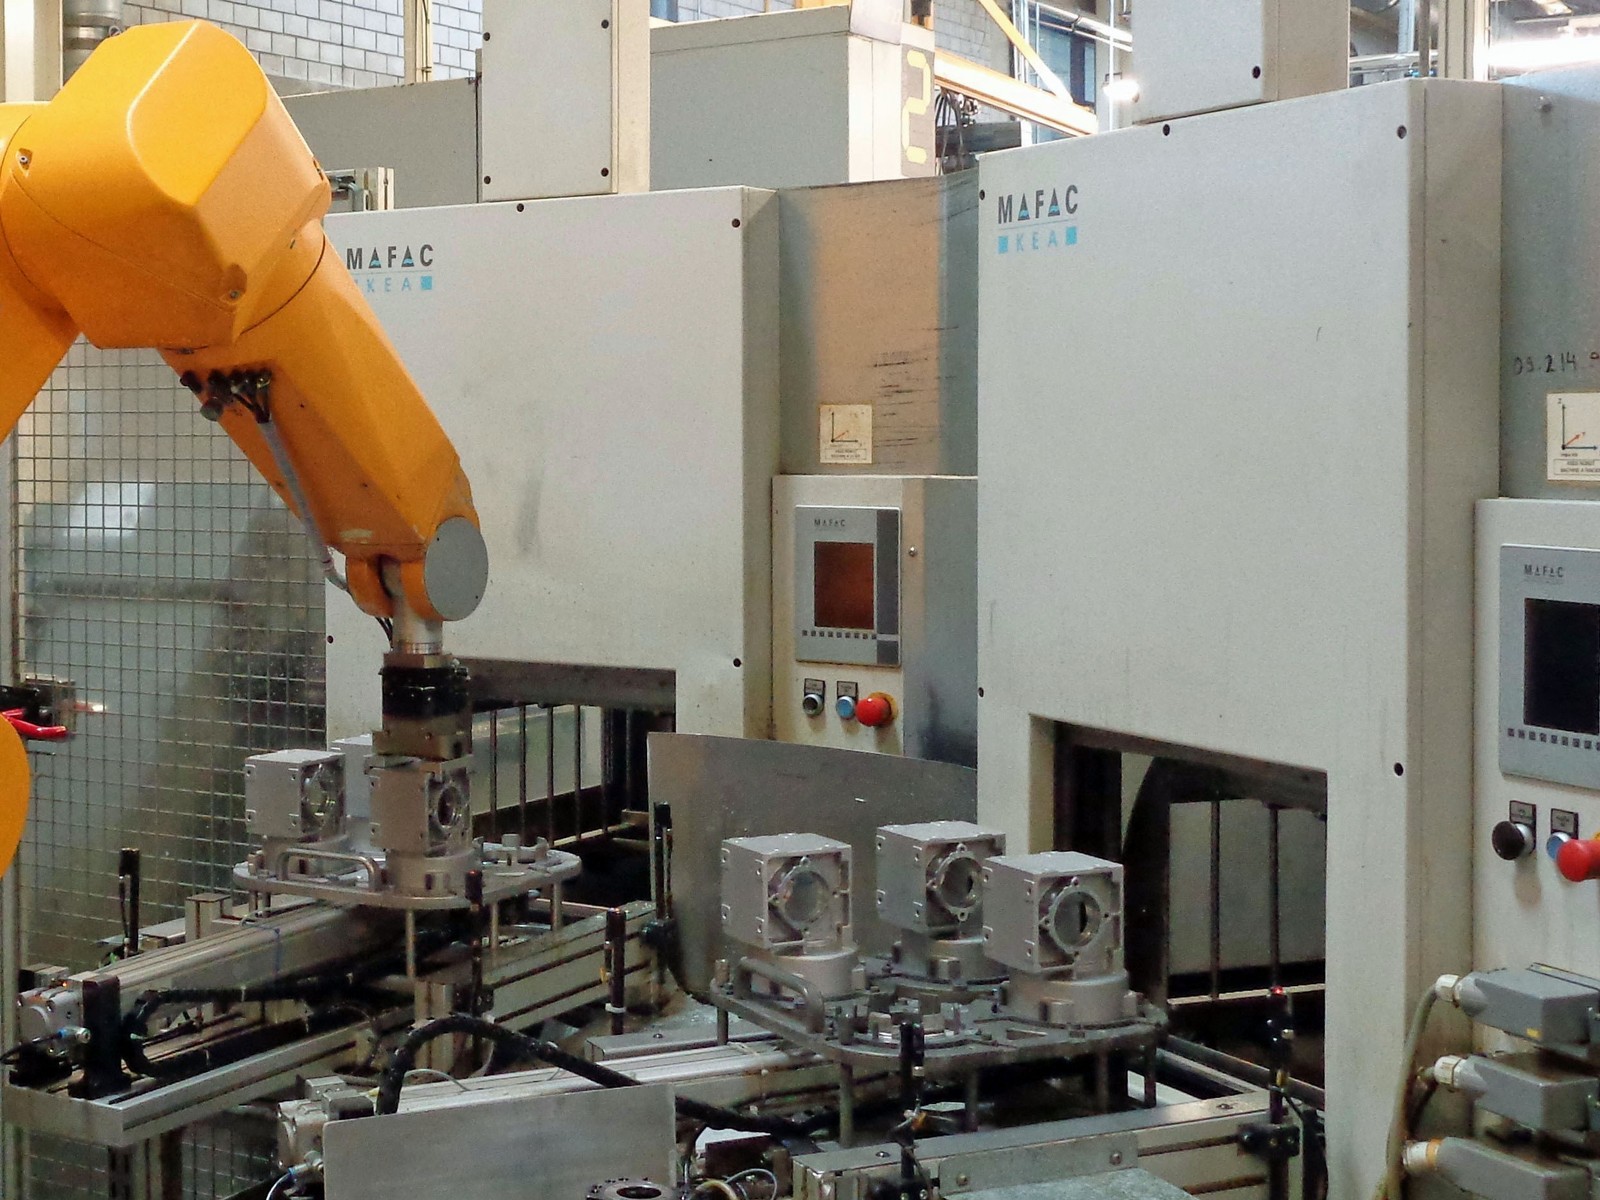 Die Versuchsanlage bei SEW Eurodrive umfasst zwei Spritzreinigungsmaschinen des Typs Mafac KEA mit Einbad-Technik, die an einen Roboter und eine Produktionsanlage für Getriebegehäuse gekoppelt sind.